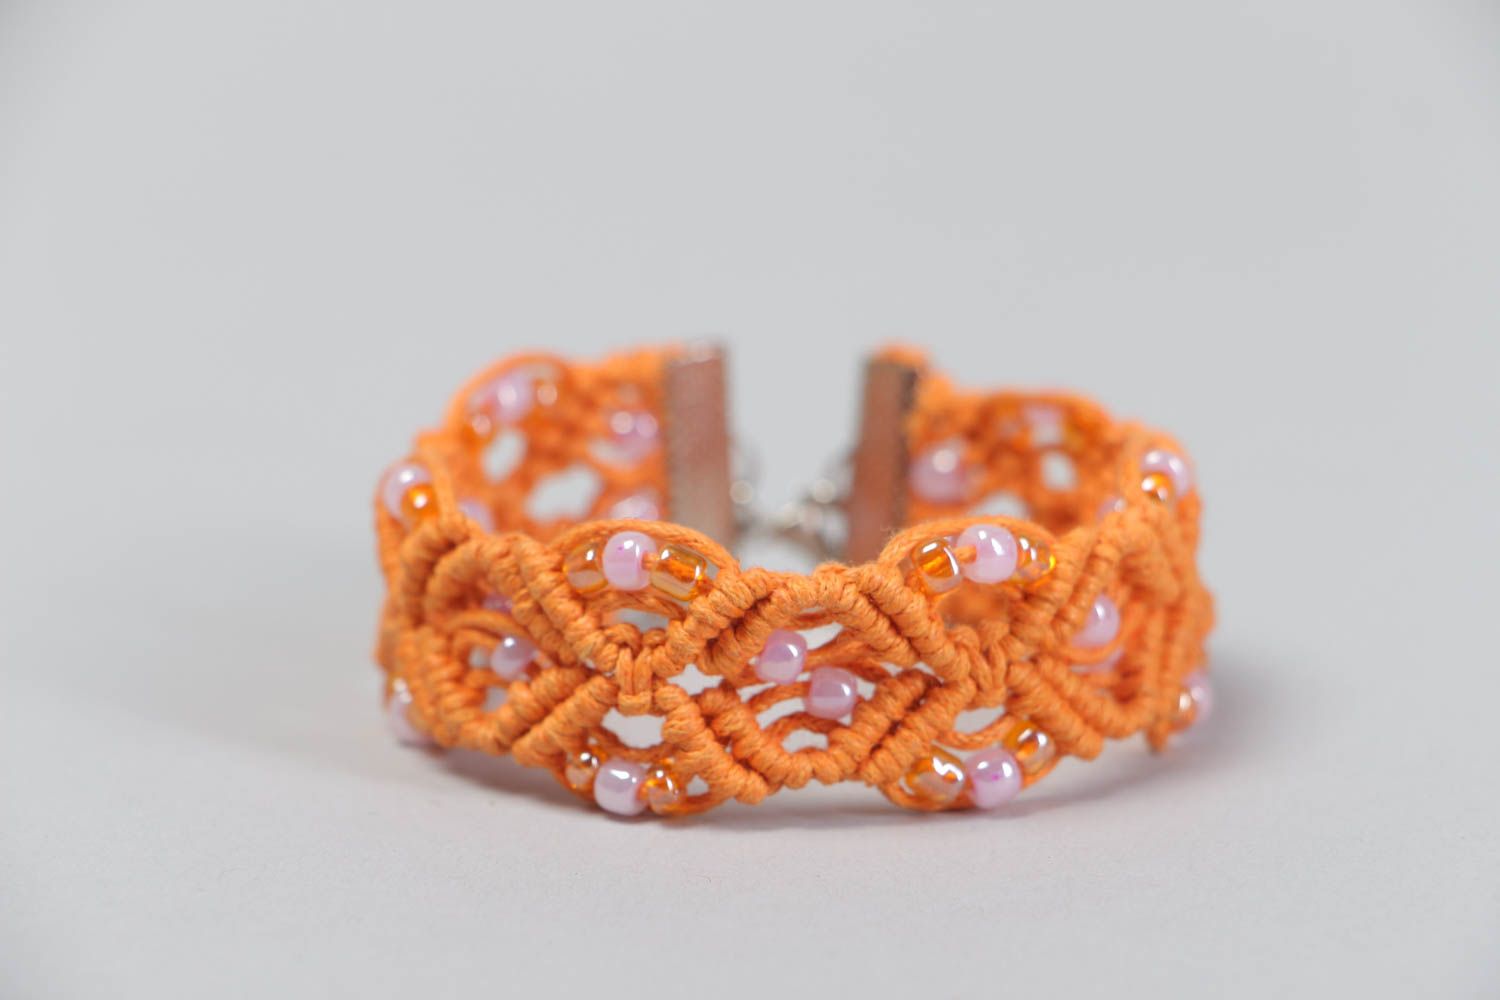 Текстильный браслет ажурный из ниток и бисера оранжевый красивый ручная работа фото 2